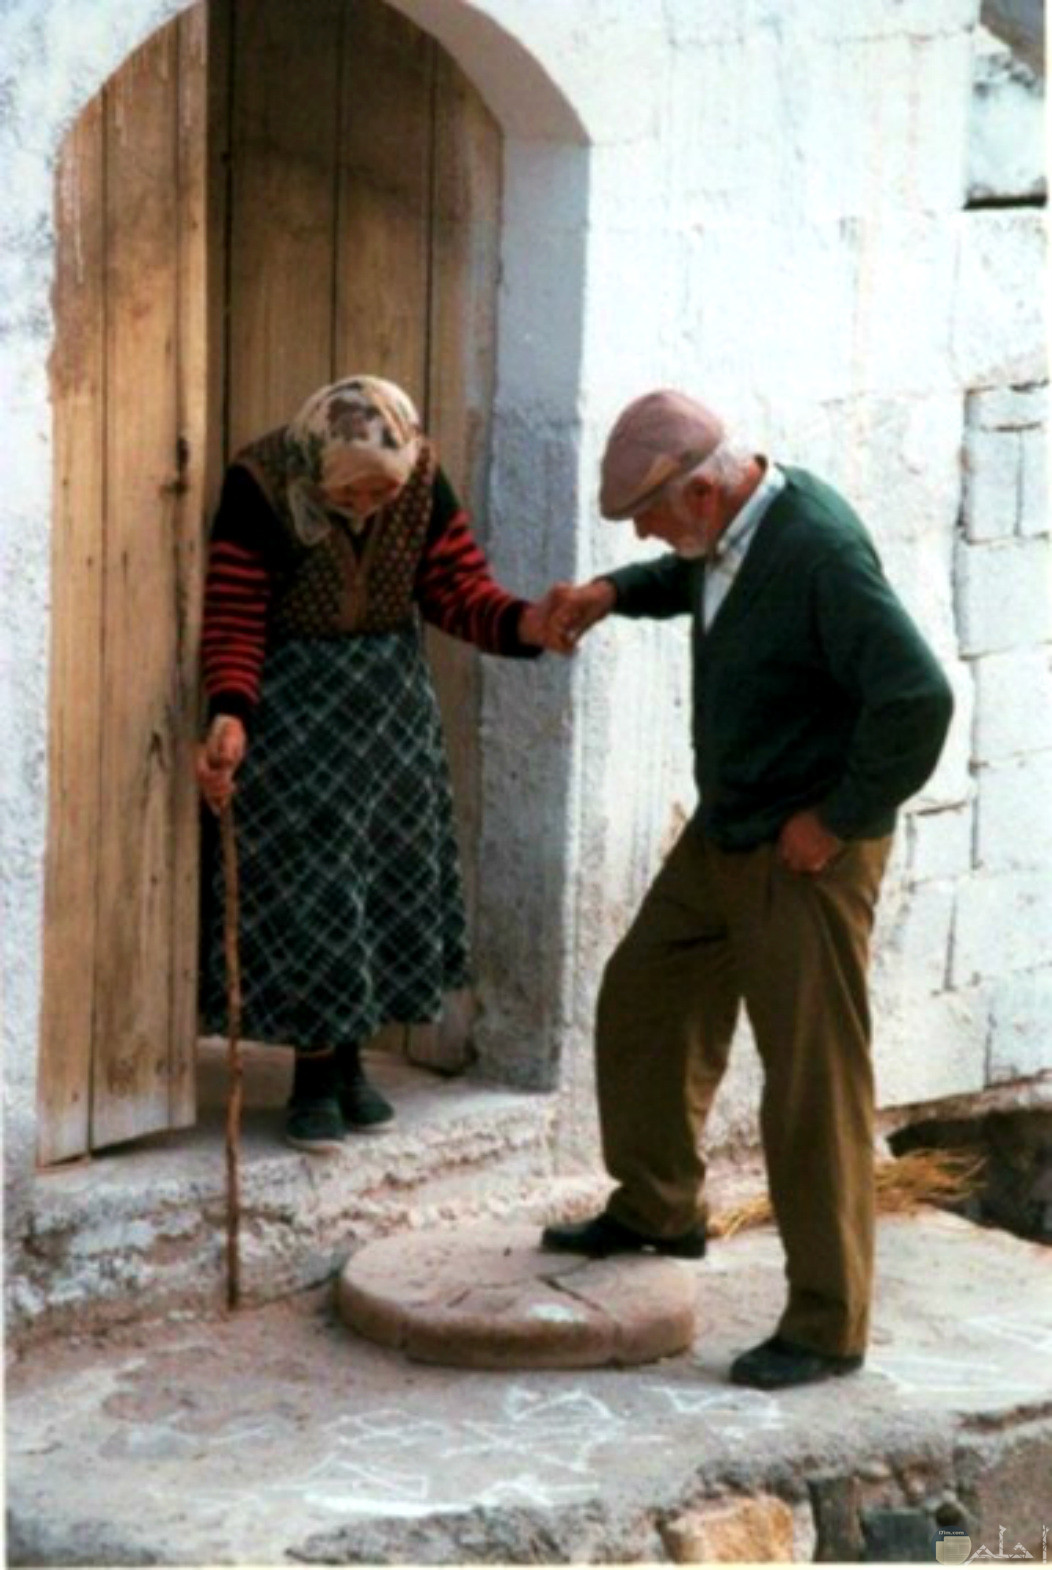 الحب الحقيقي يدوم حتى الكبر، عجوزين يمسكان يد بعض في حب و اهتمام.